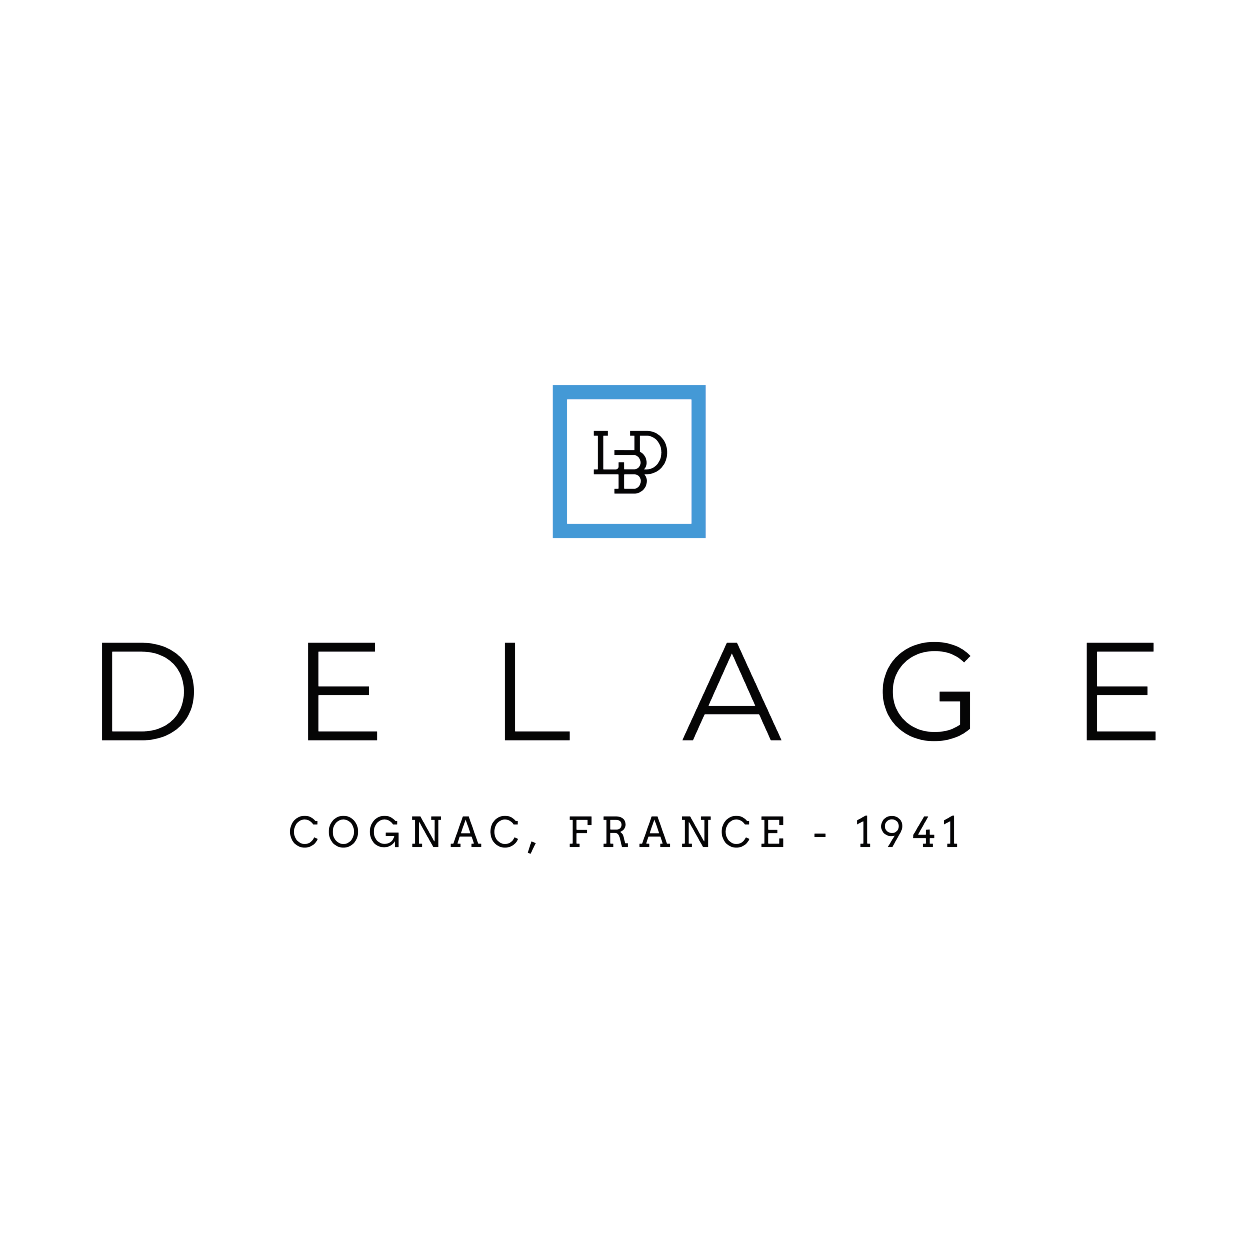 Logo de l'entreprise Delage, client d'HEXAGP.